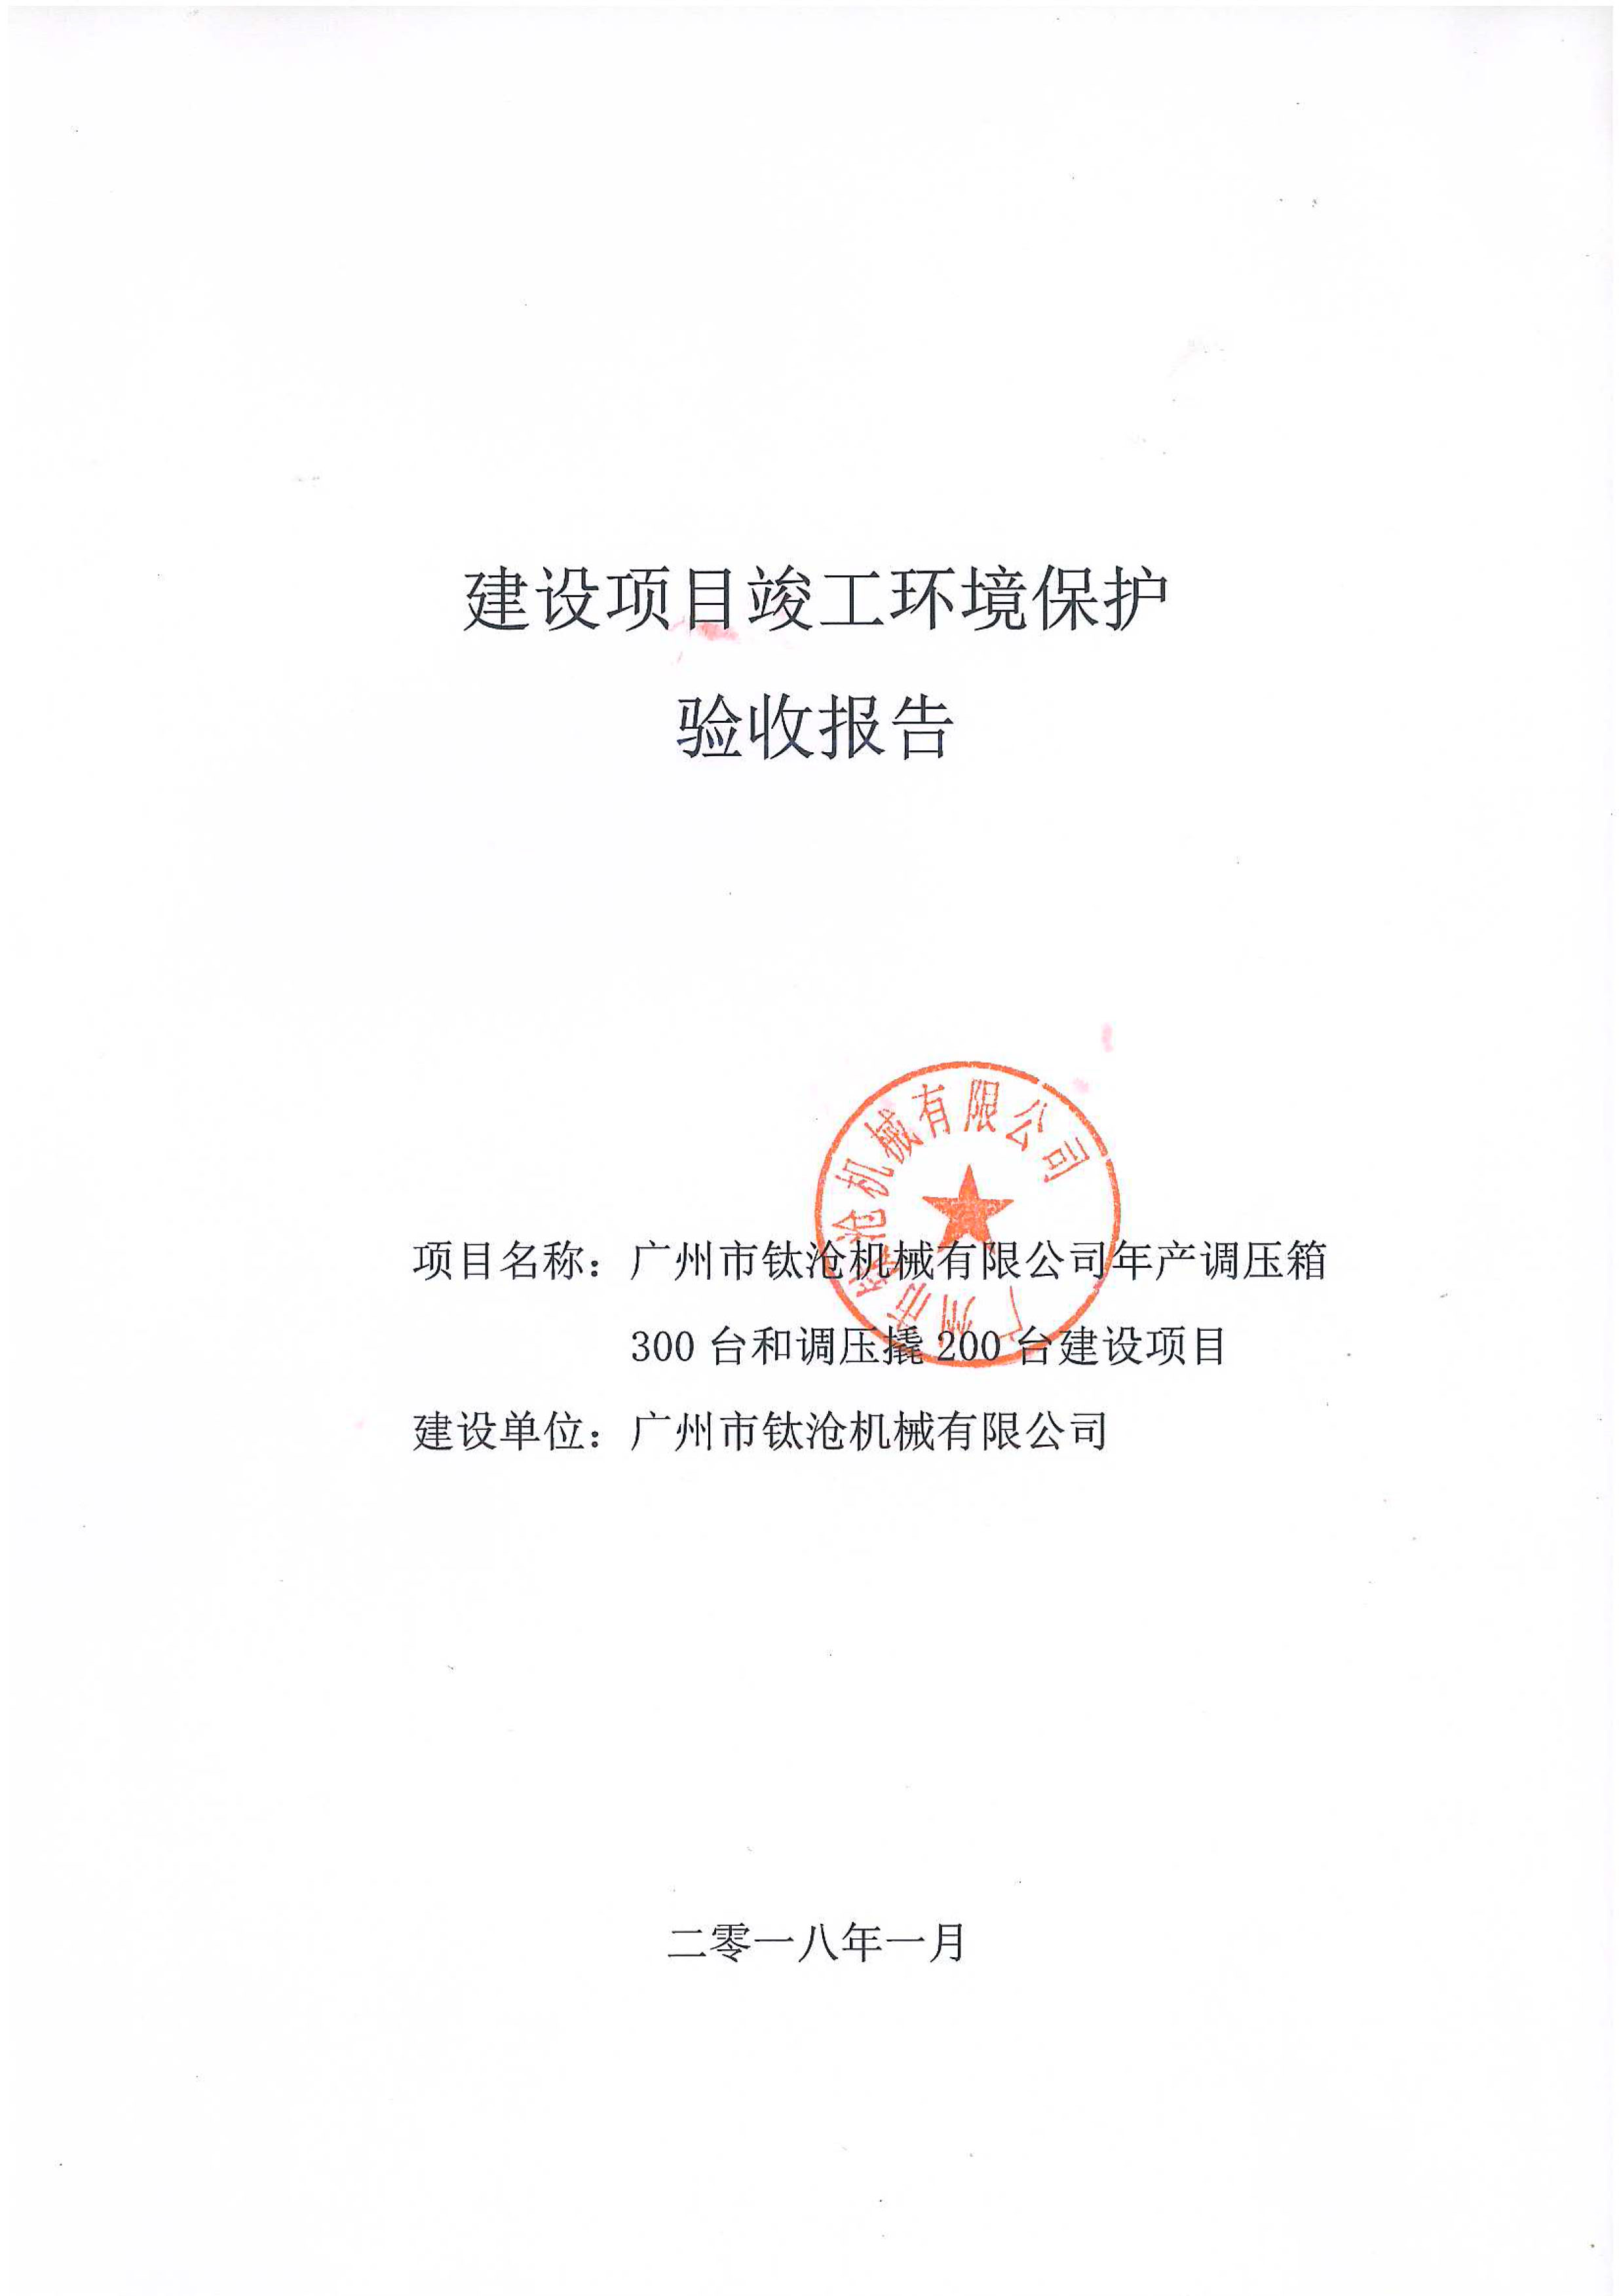 广州市钛沧机械有限公司竣工环保验收报告